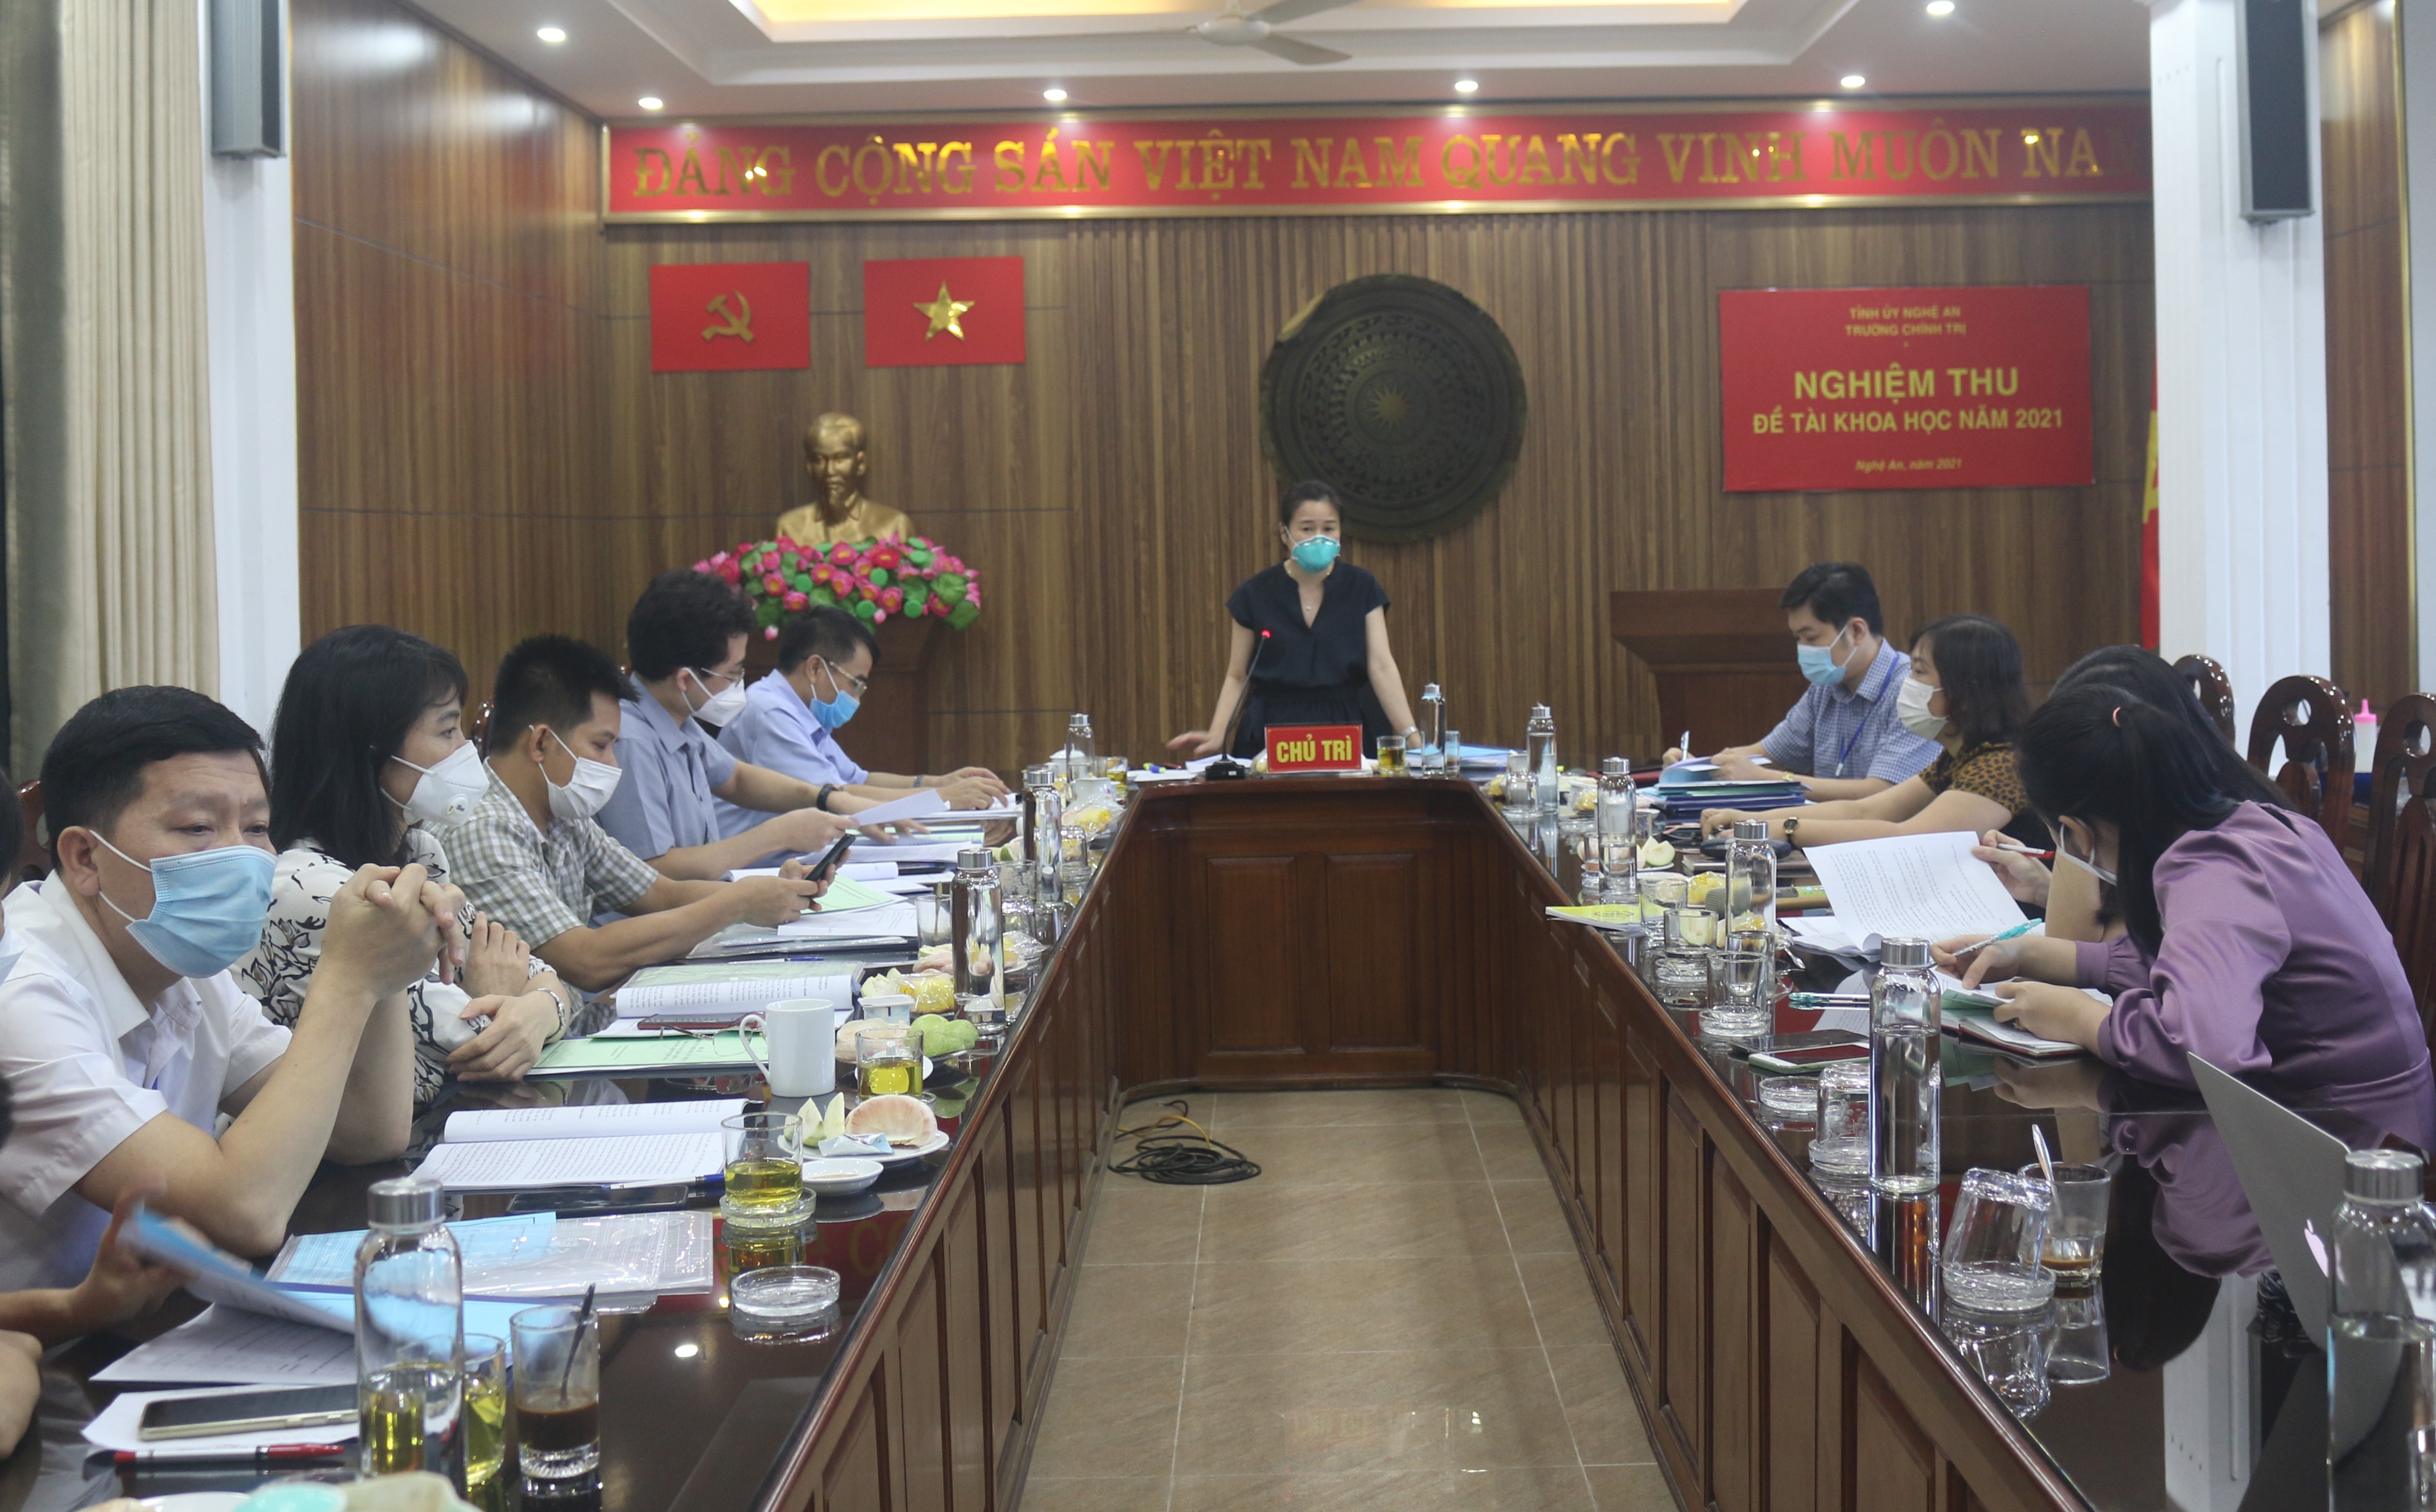 Trường Chính trị tỉnh Nghệ An tổ chức nghiệm thu đề tài khoa học cấp cơ sở năm 2021